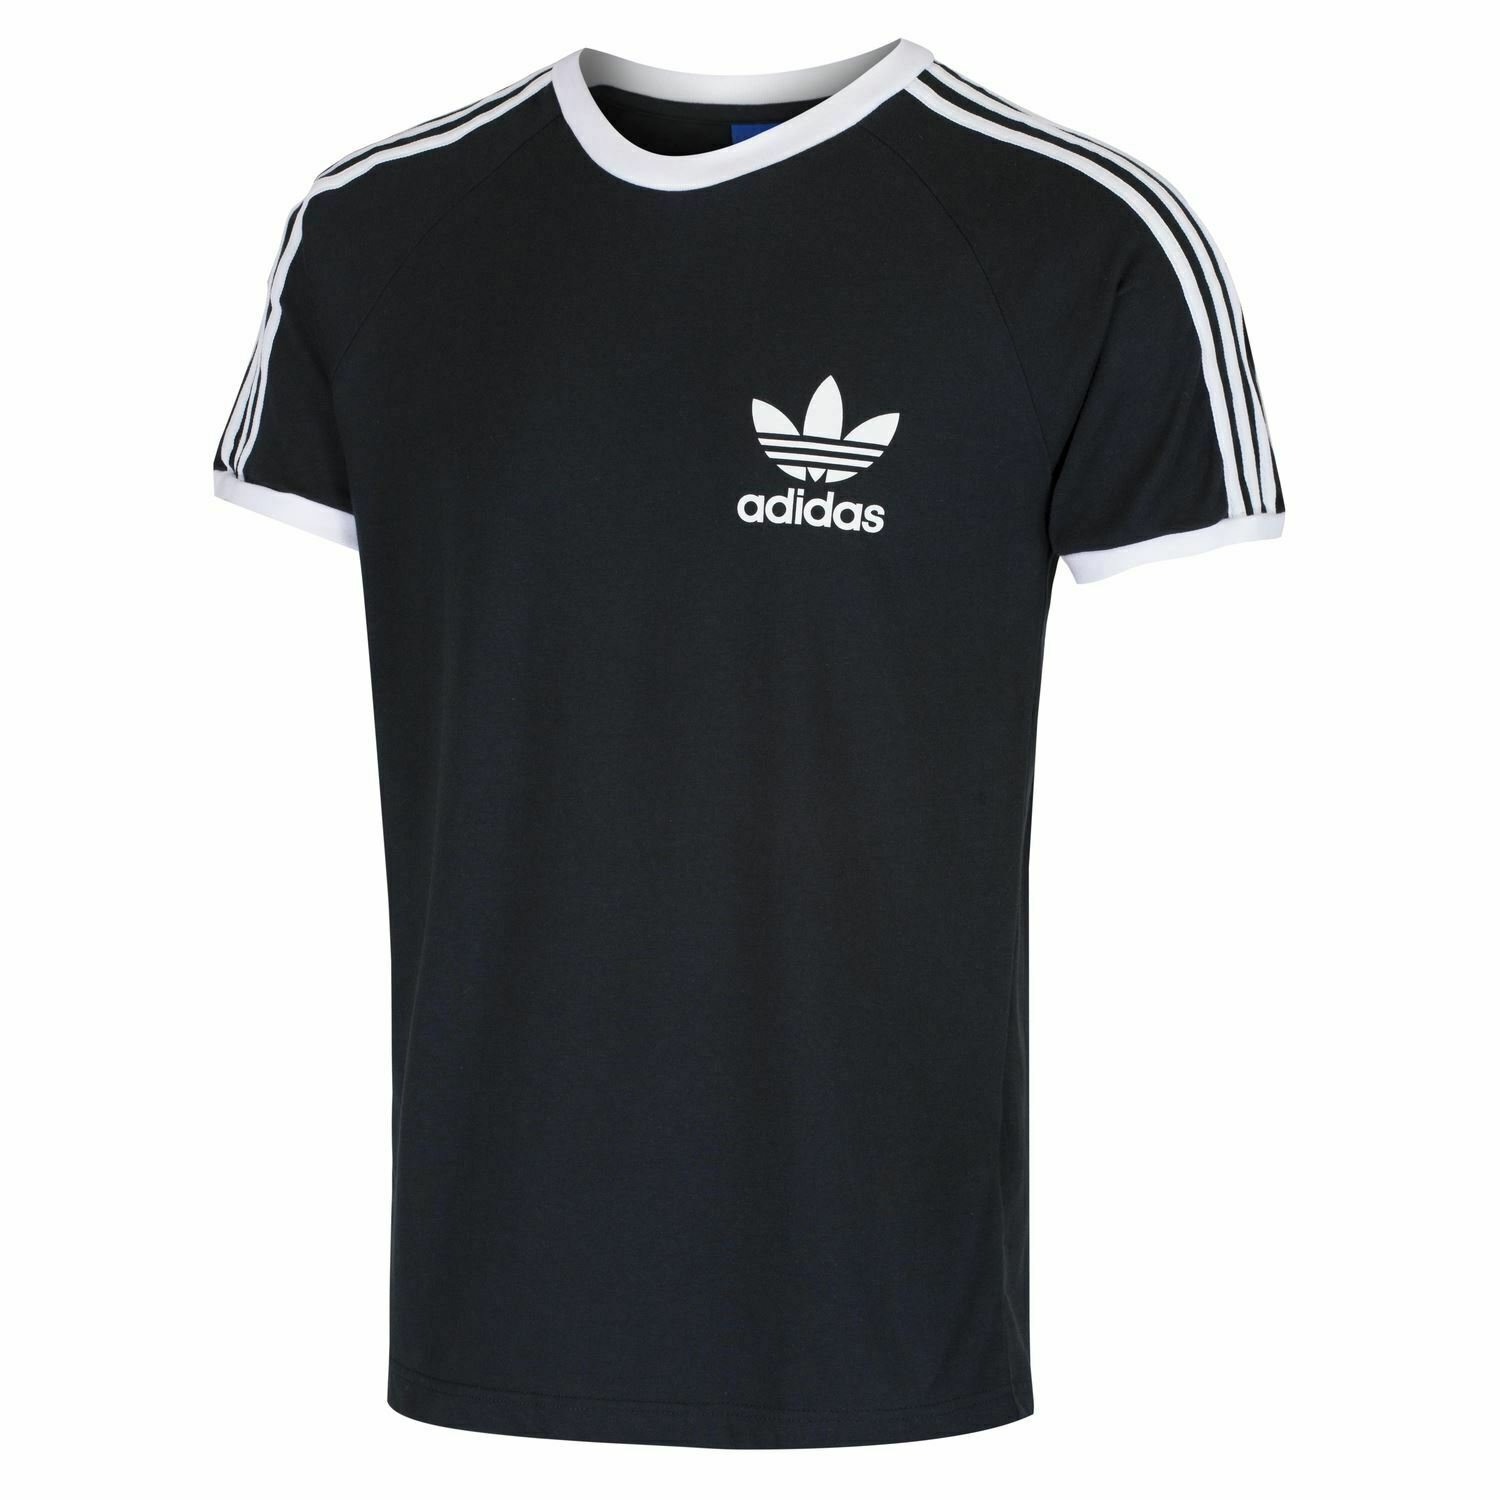 Adidas Originals California Men's T-Shirt Trefoil Retro 3-Stripes ... منتجات ناتشورال تاتش